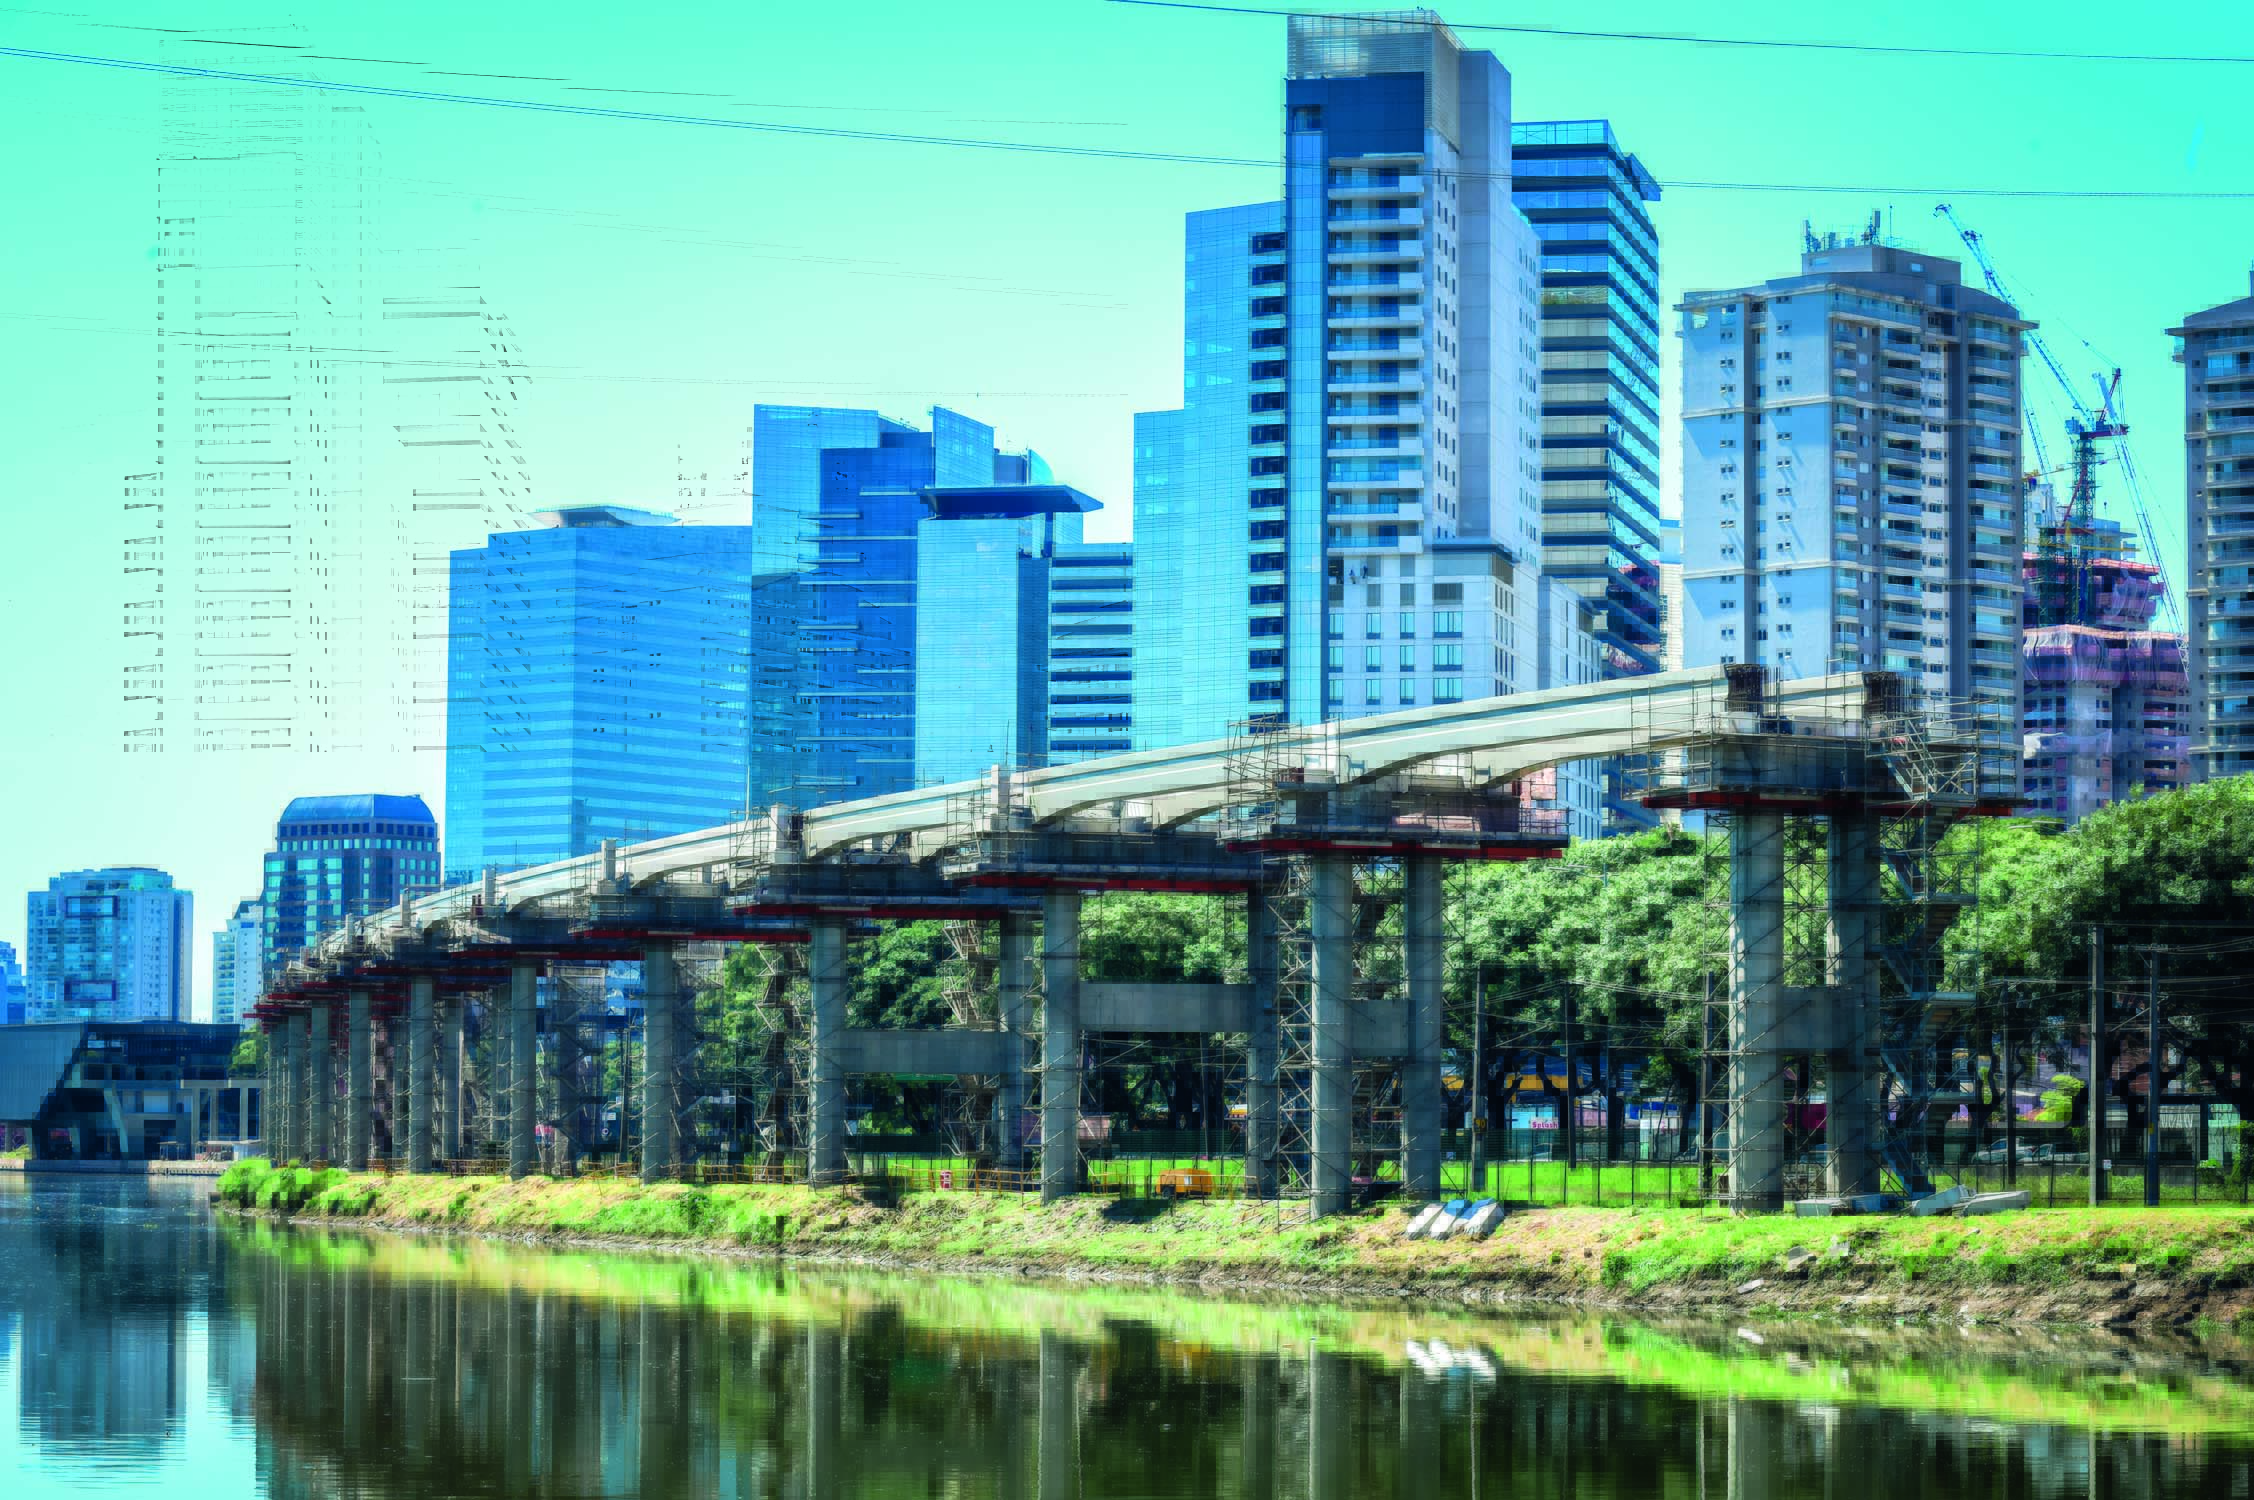 Construção de linha de metrô inacabada em uma das margens do Rio Pinheiros. O céu está azul e o dia ensolarado. Ao fundo é possível ver prédios e árvores